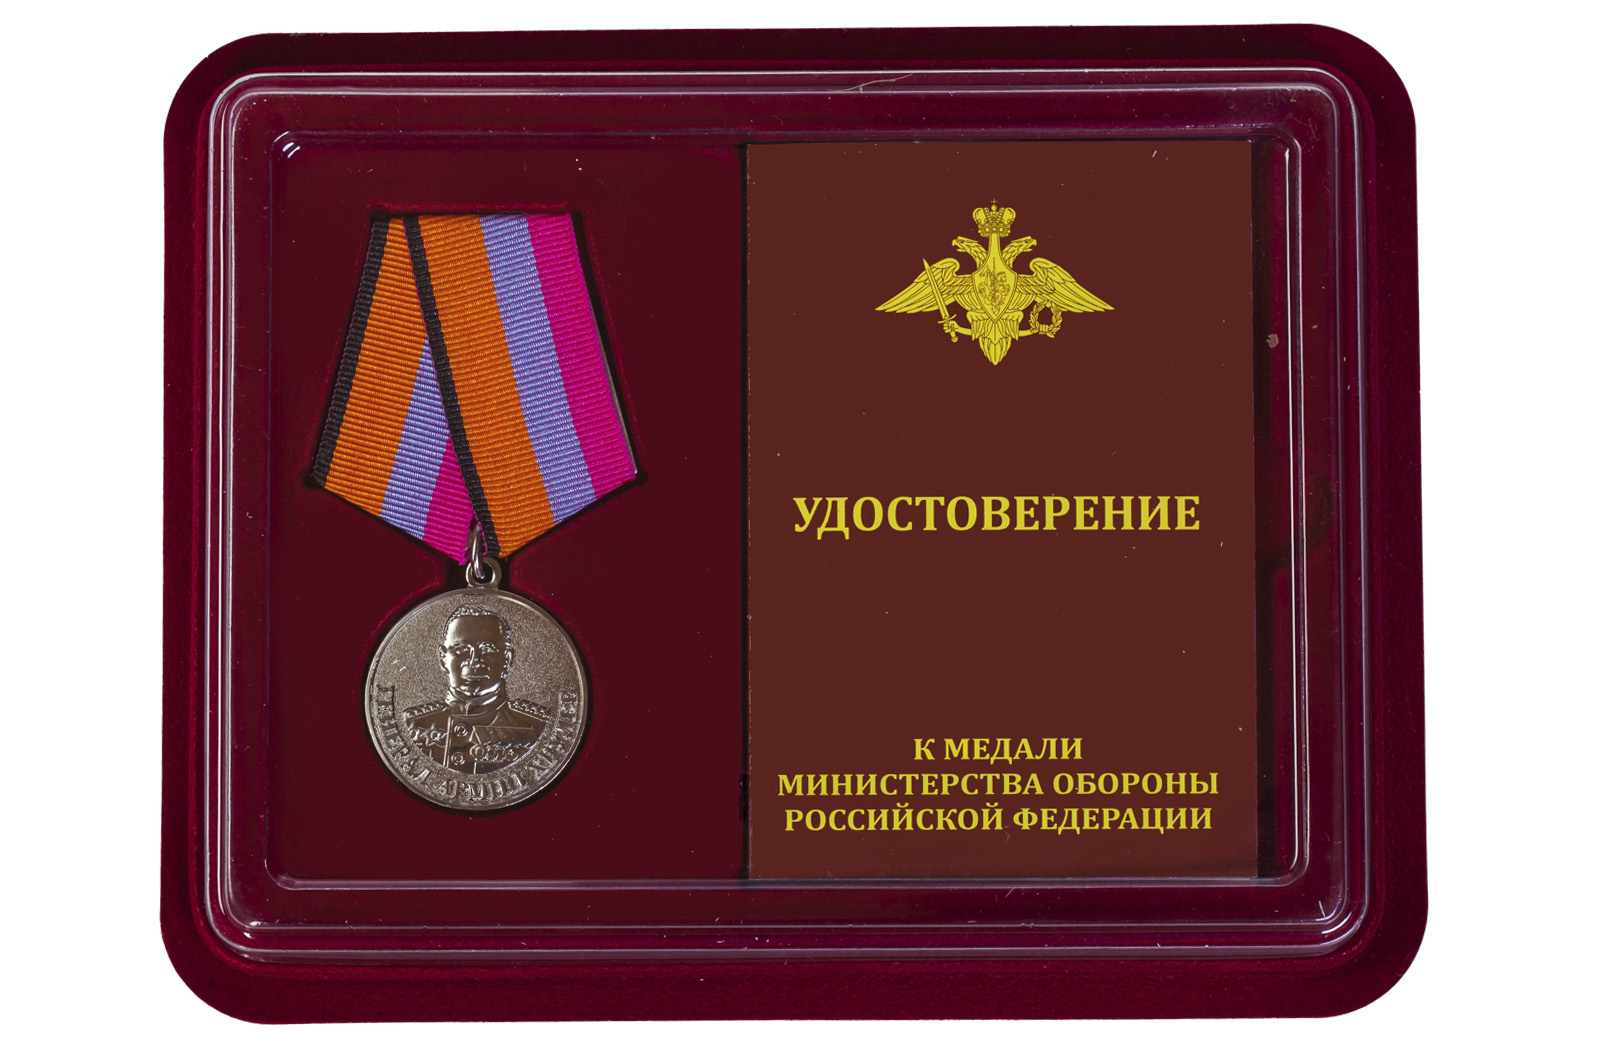 Купить медаль МО РФ Генерал армии Хрулев по выгодной цене